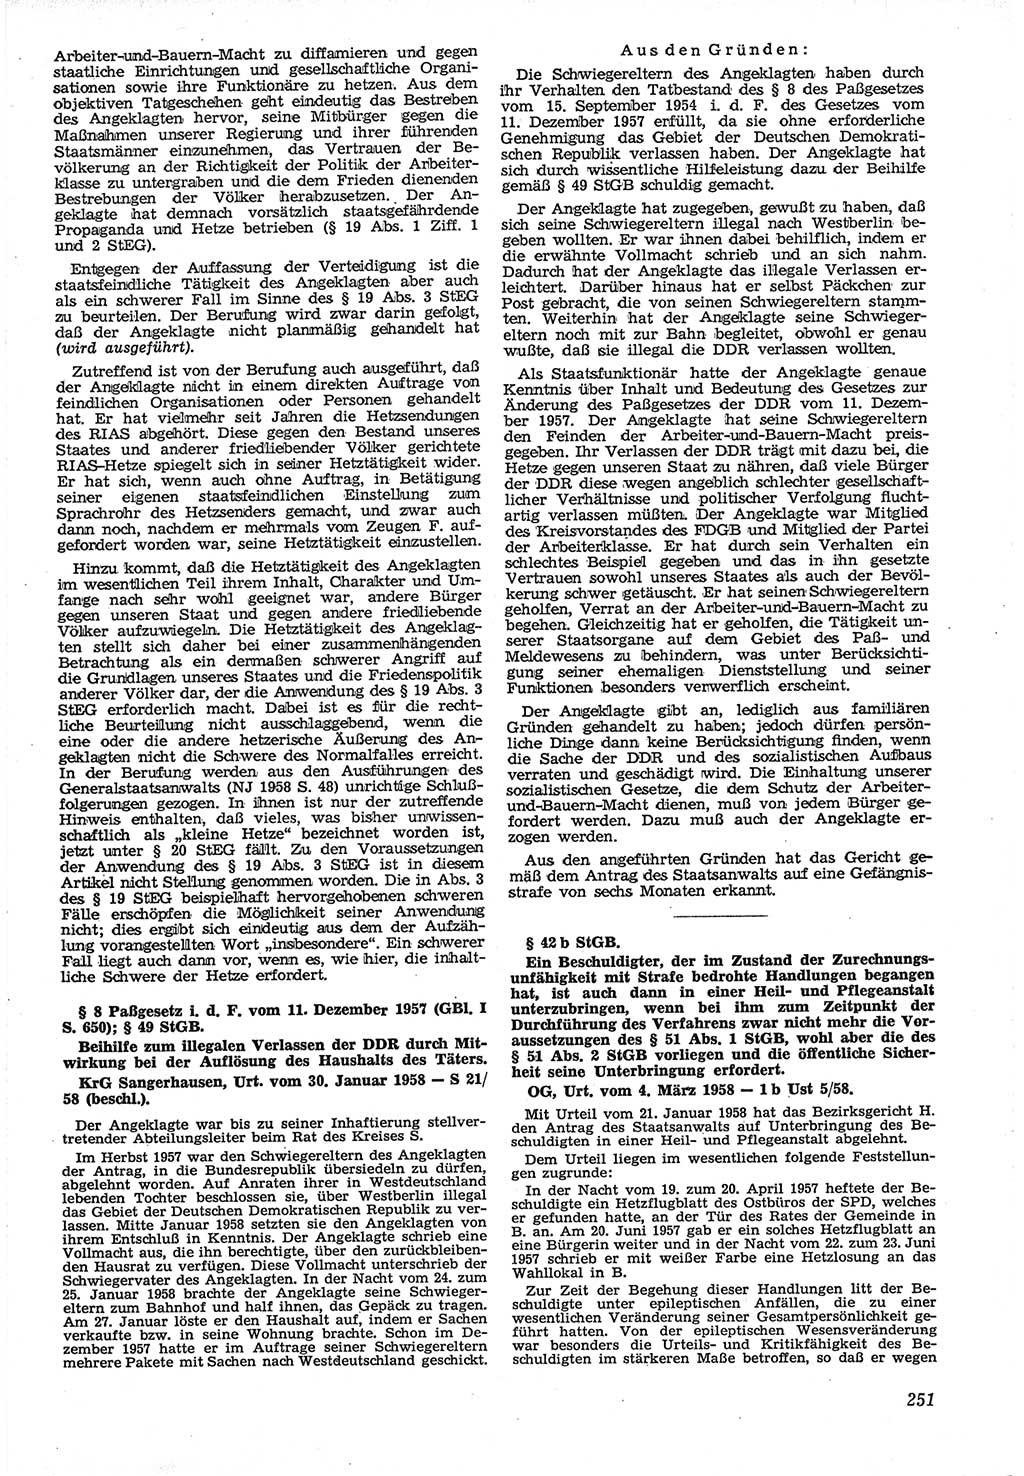 Neue Justiz (NJ), Zeitschrift für Recht und Rechtswissenschaft [Deutsche Demokratische Republik (DDR)], 12. Jahrgang 1958, Seite 251 (NJ DDR 1958, S. 251)